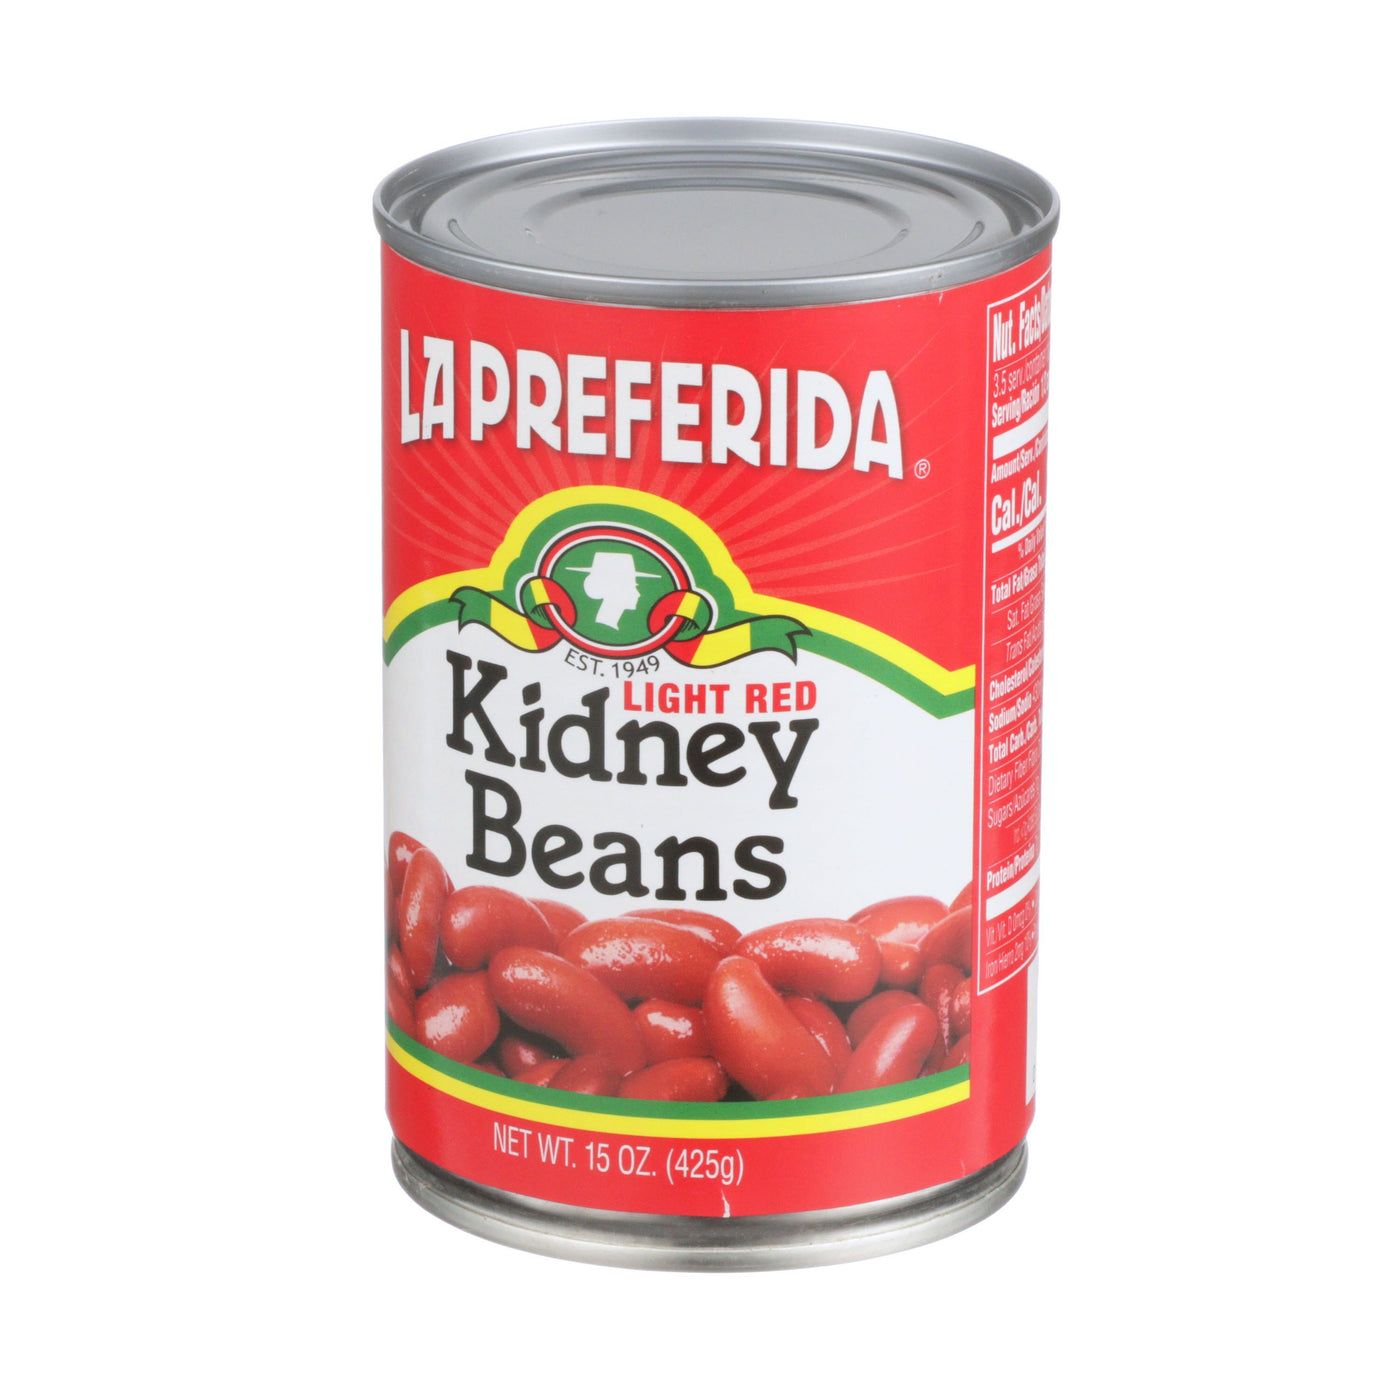 Light Red Kidney Beans, 15 OZ